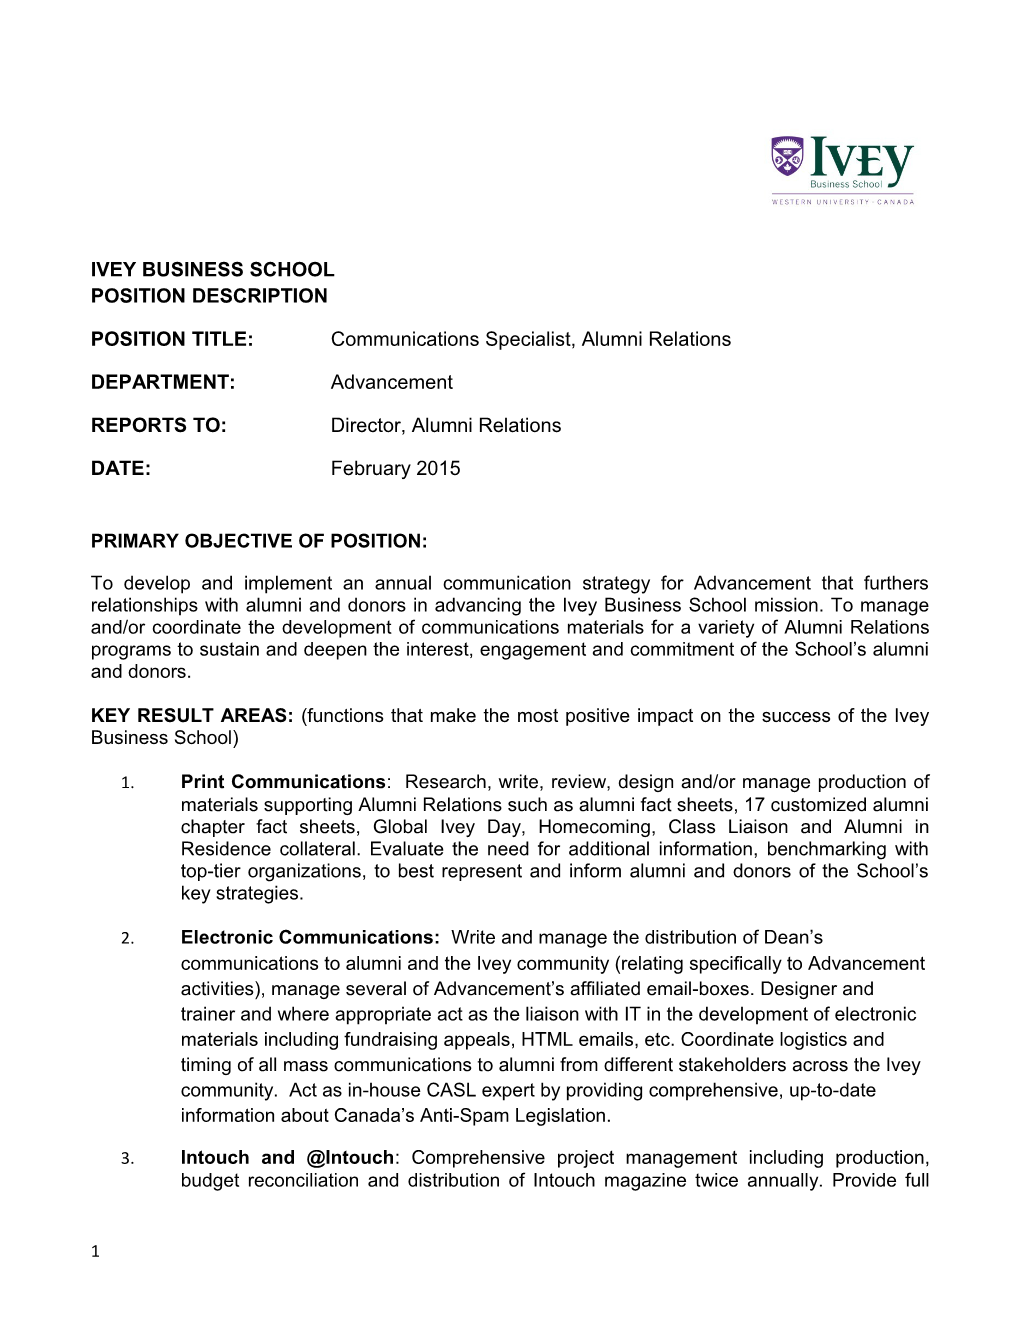 Ivey Business School Position Description